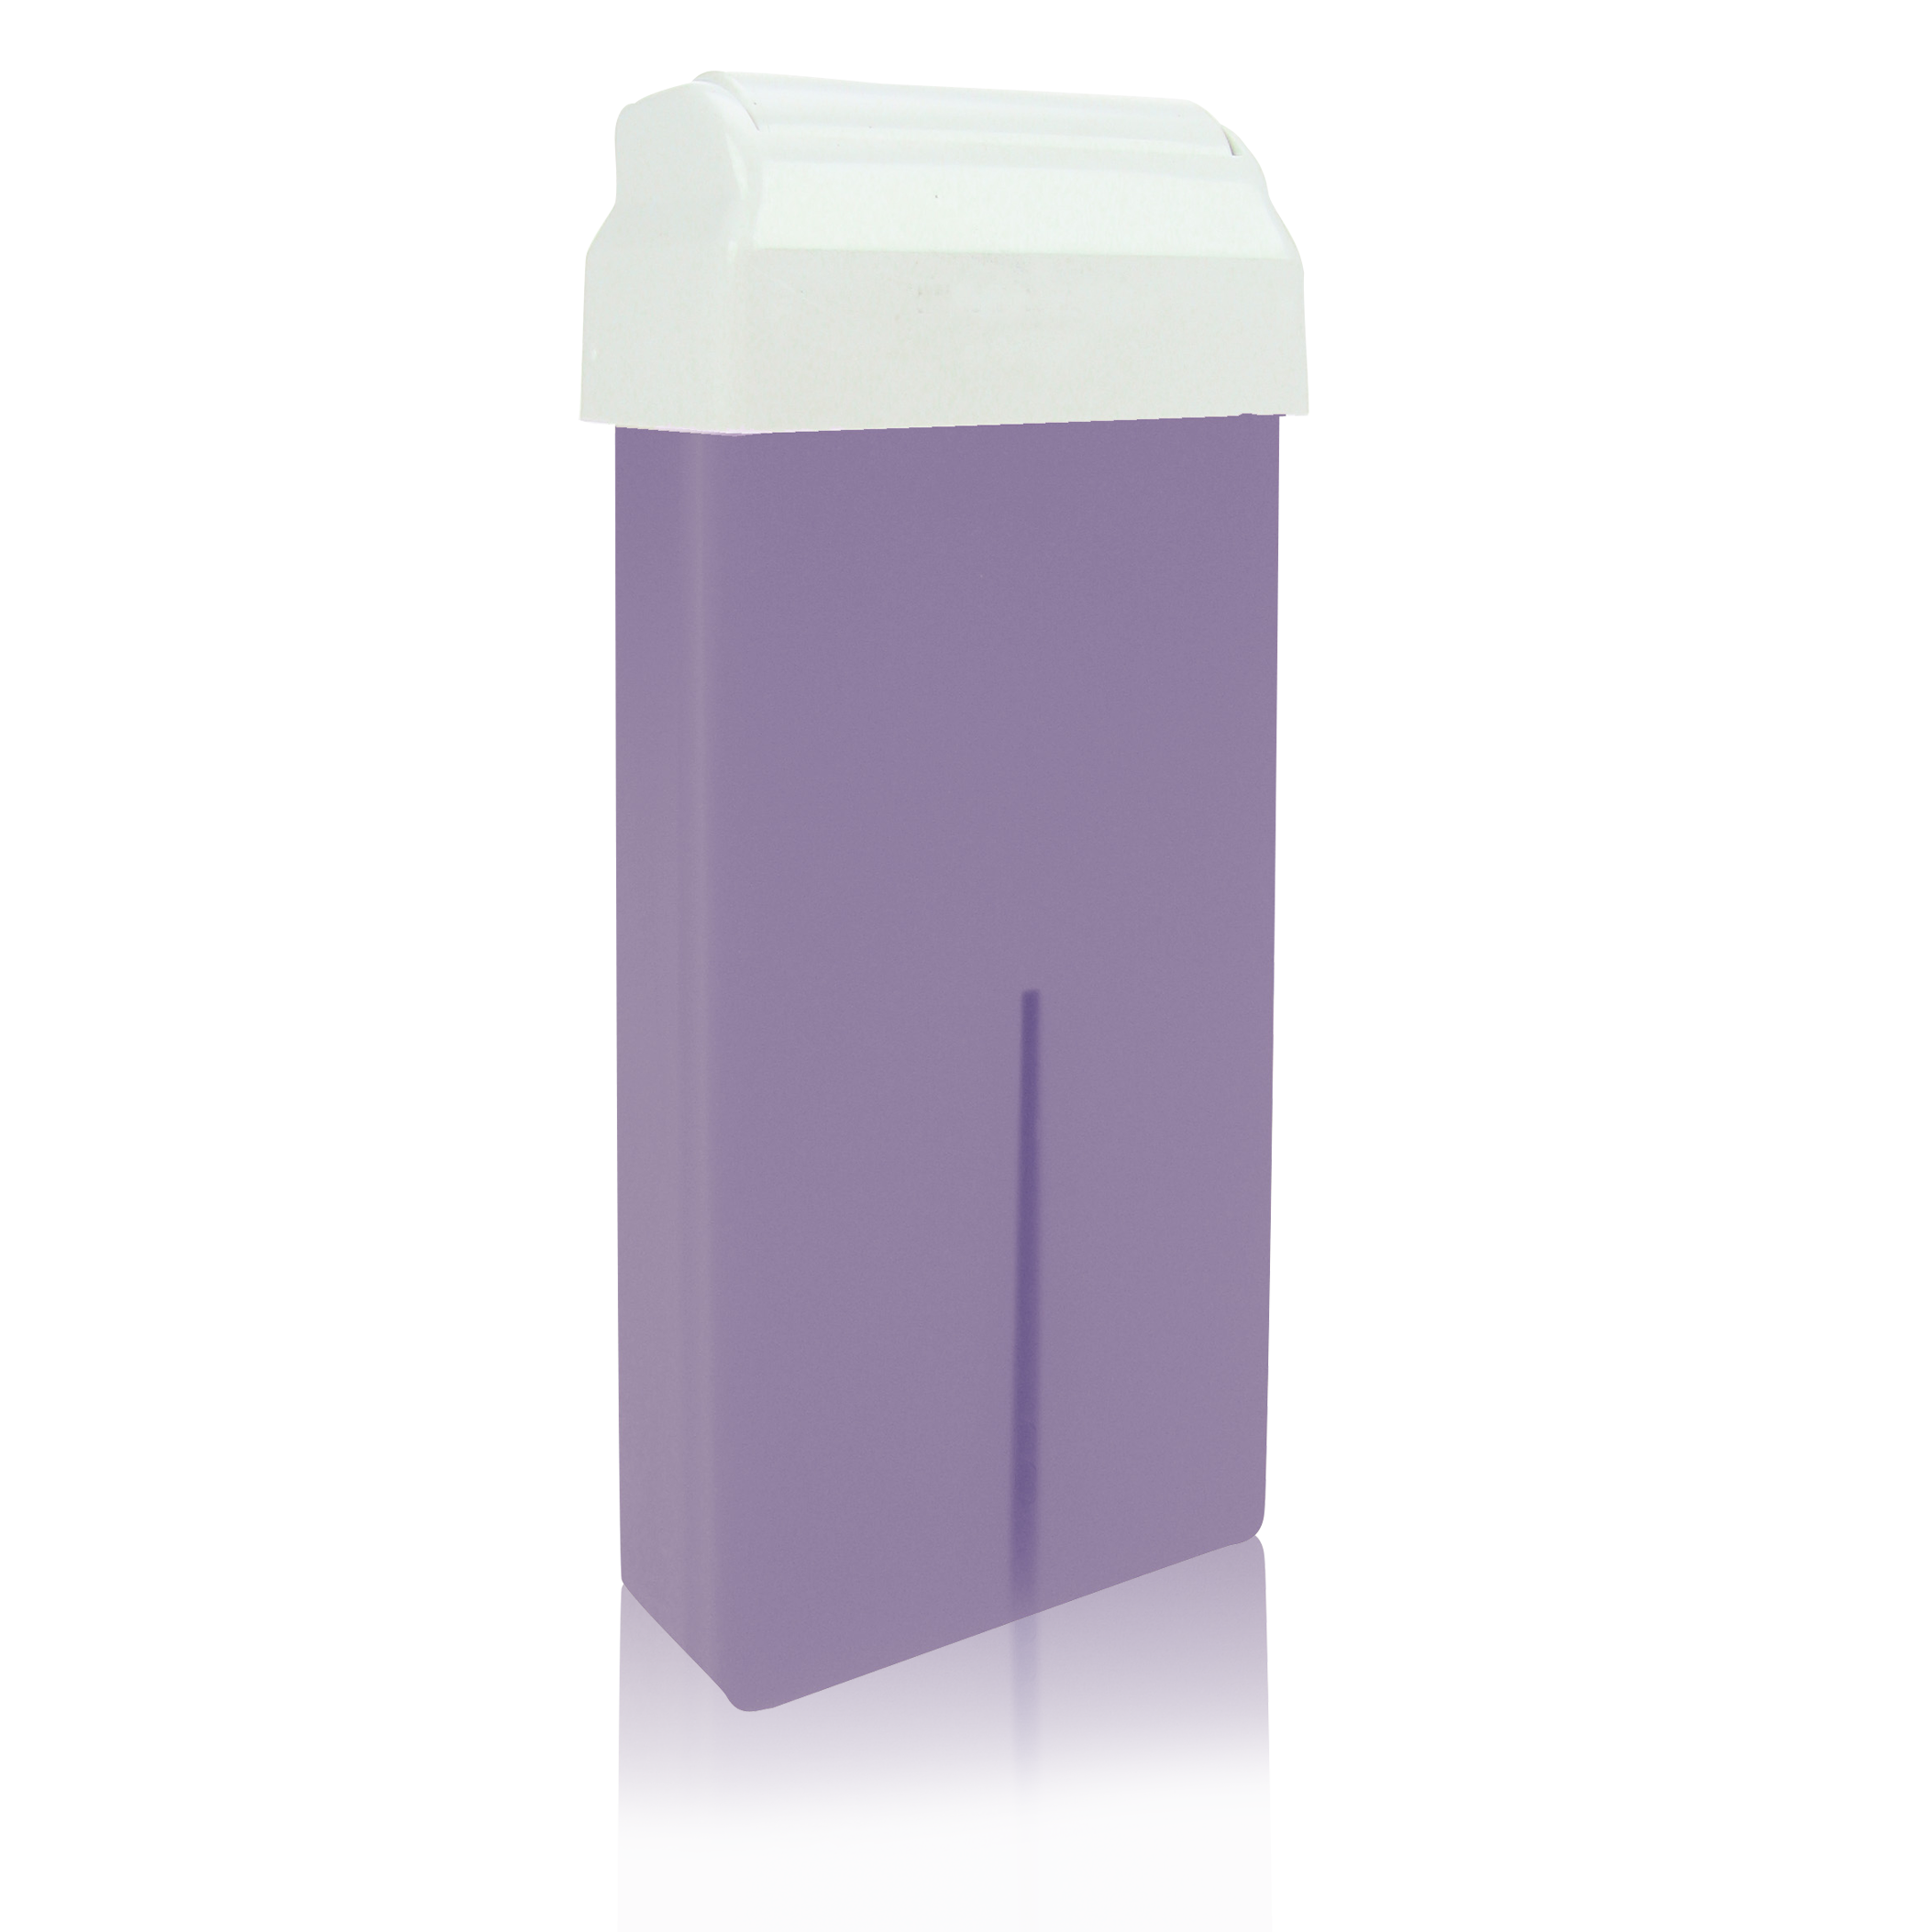  Wachspatrone Body Lavendel mit Rollaufsatz, 100ml